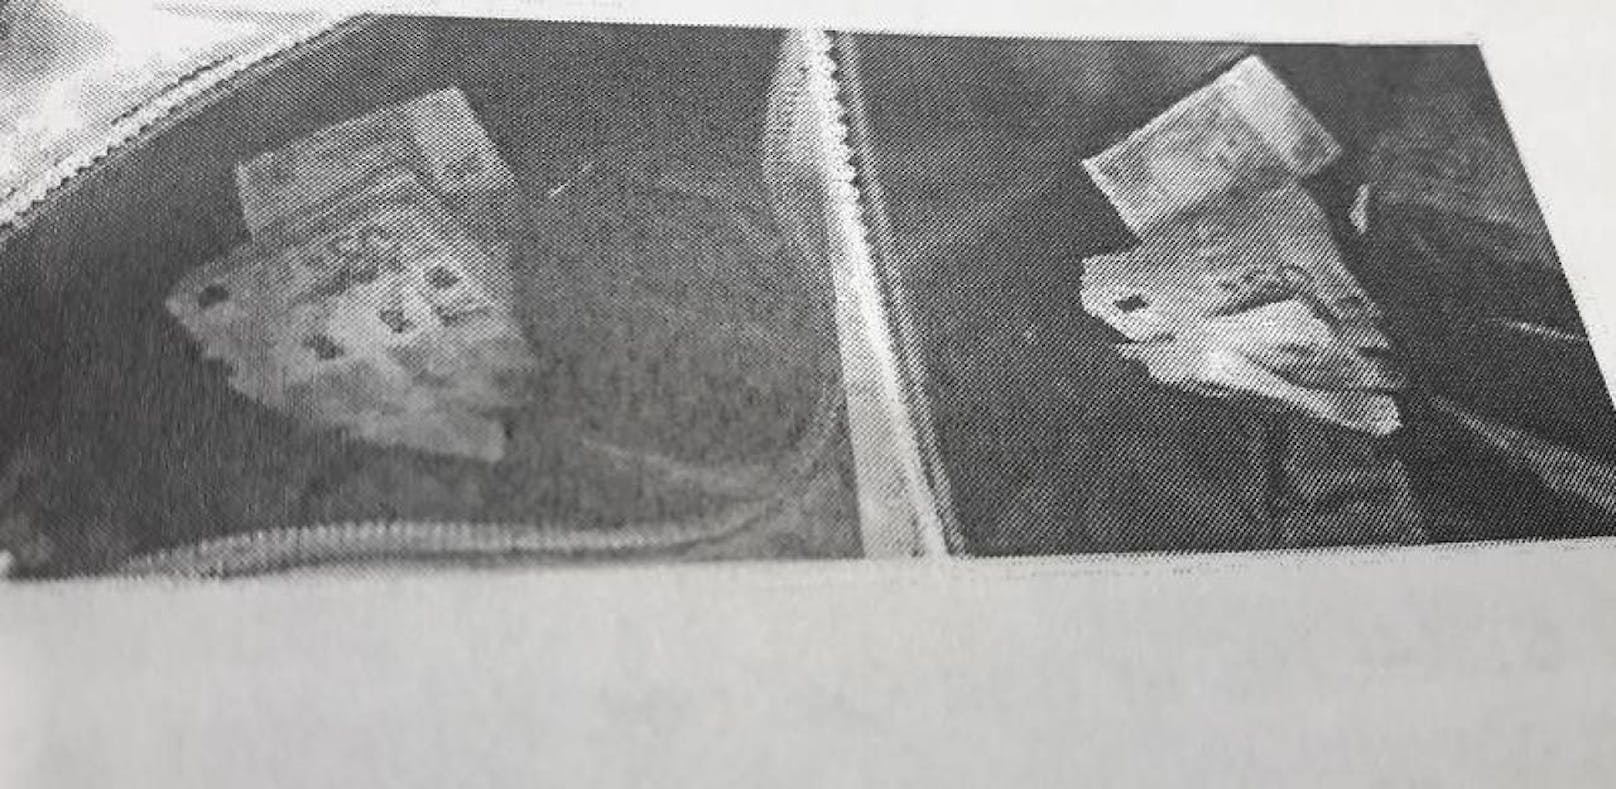 50-Euro-Bündeln in einem Rucksack. Straches Leibwächter soll ihn aus einer Kanzlei im Jahr 2013 abgeholt haben.